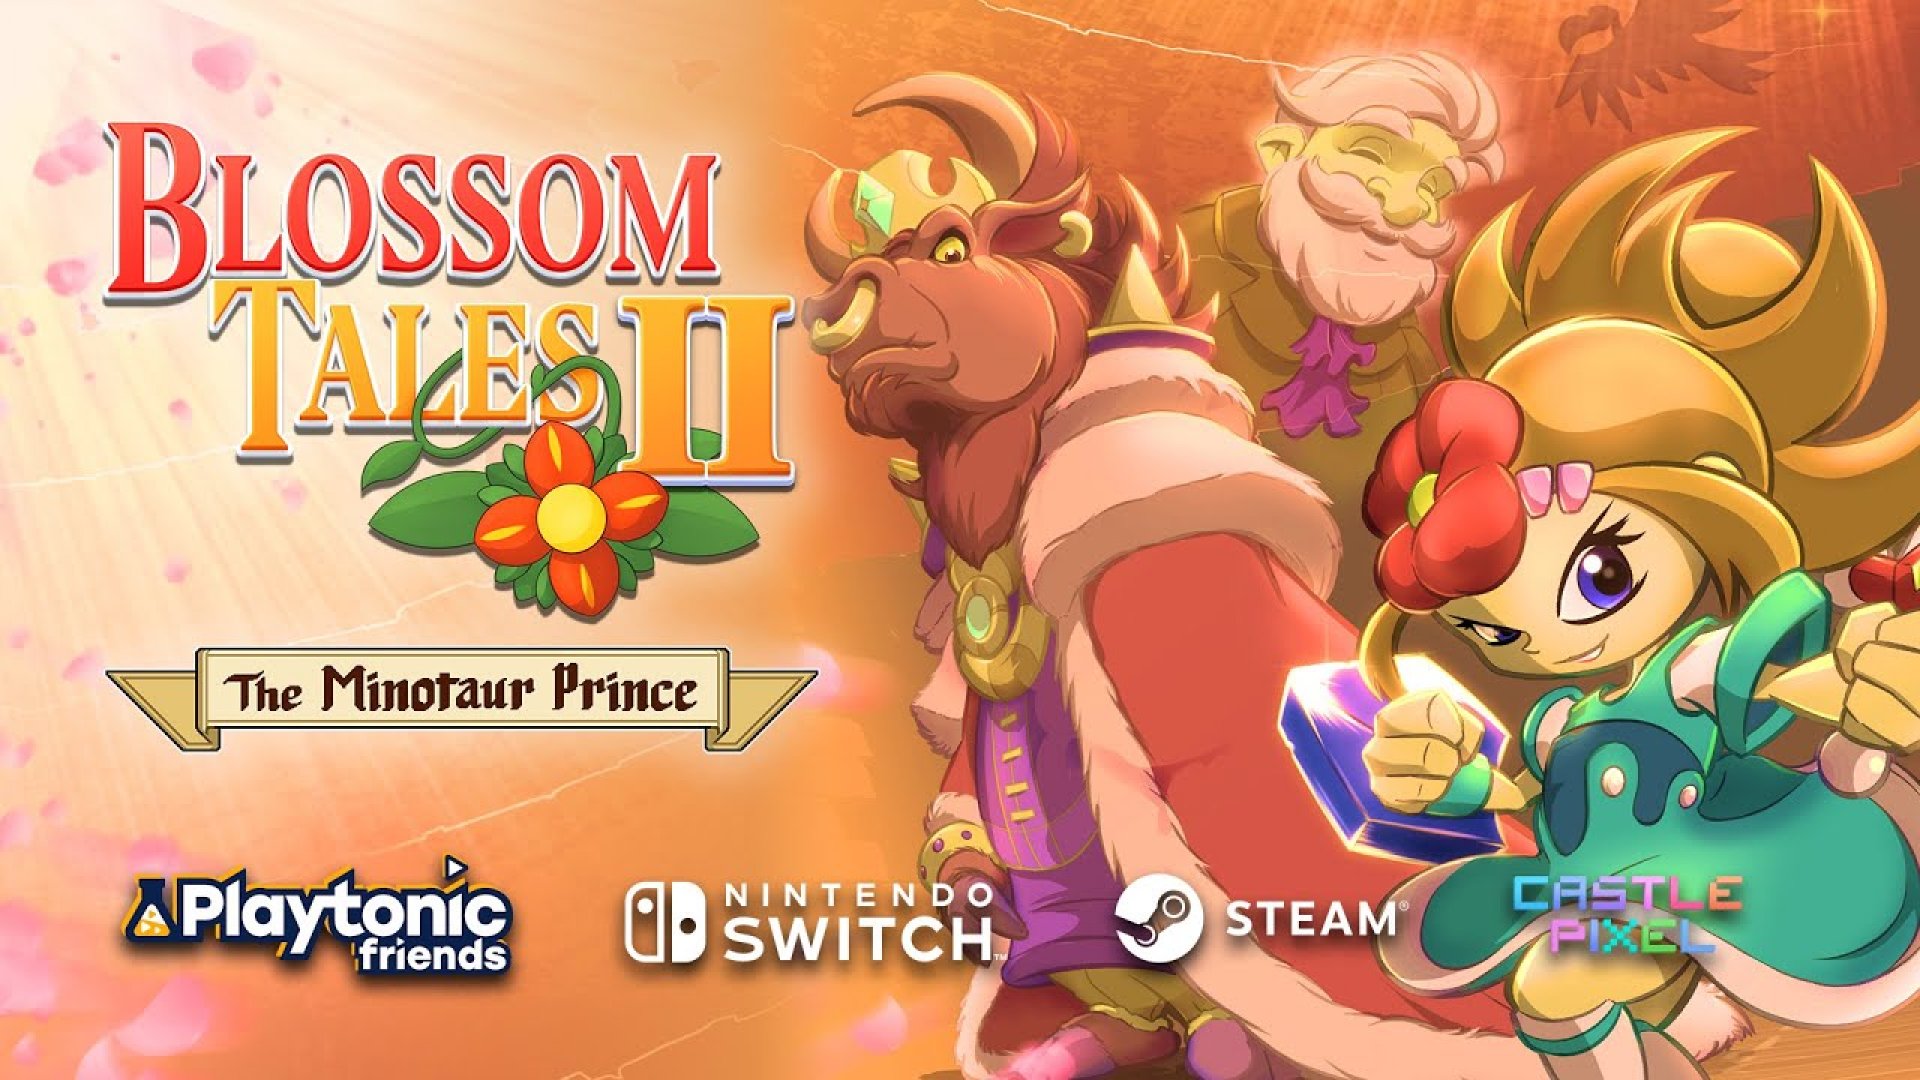 Blossom играть. Blossom Tales 2: the Minotaur Prince. Blossom Tales. Blossom Tales II: the Minotaur Prince. Blossom игра.